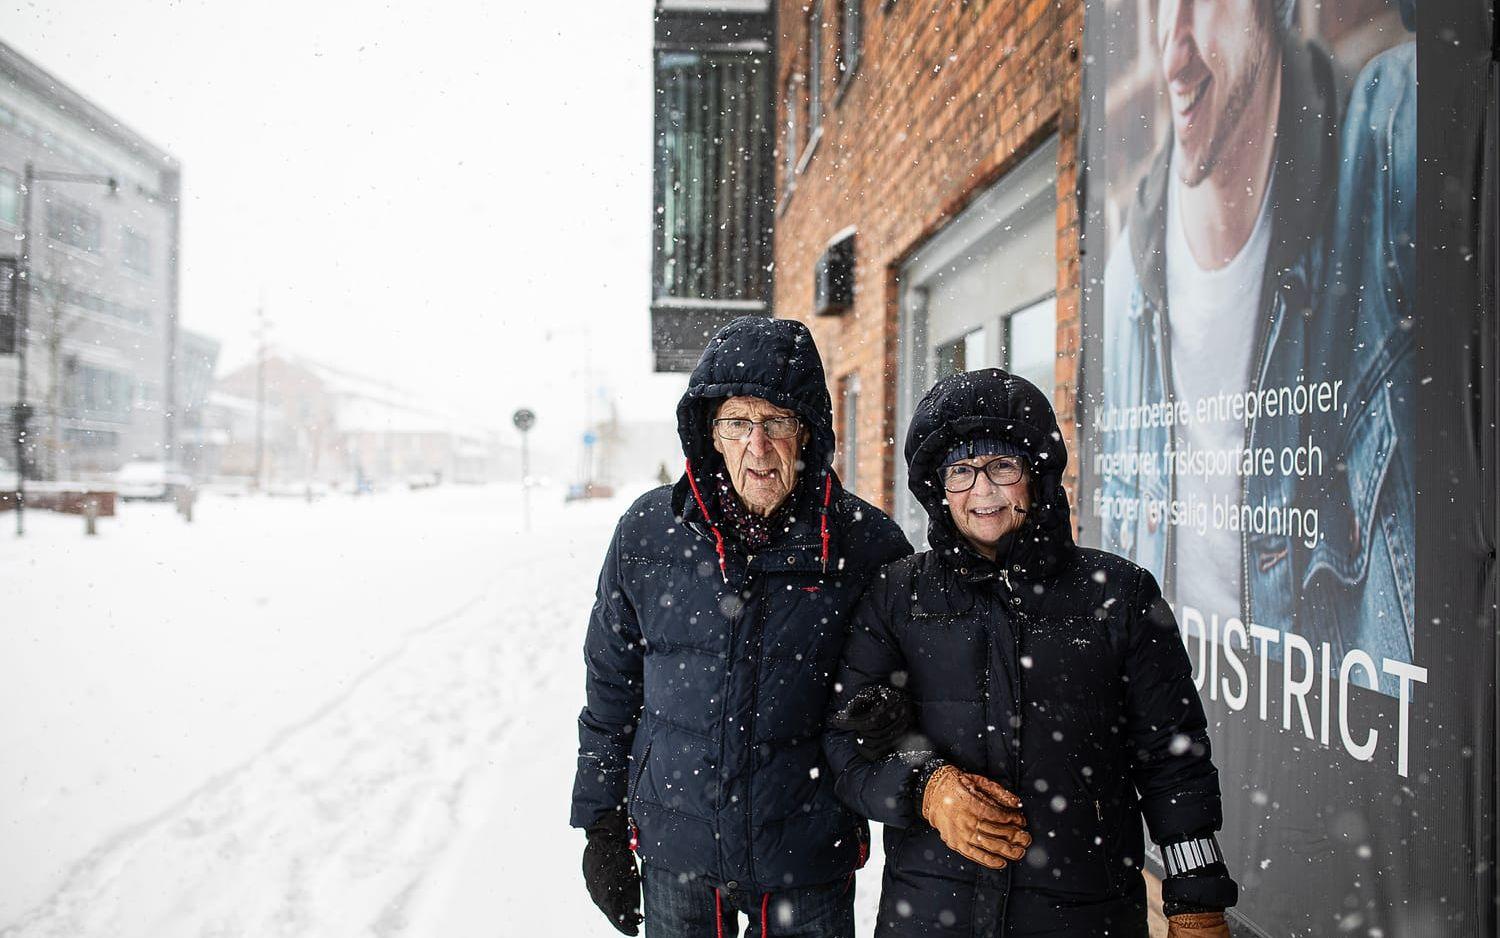 Ivan Karlsson och Ewa Dahl valde buss istället för bil idag. – Så länge man inte behöver köra går det väl bra med det här vädret, säger Ewa Dahl.